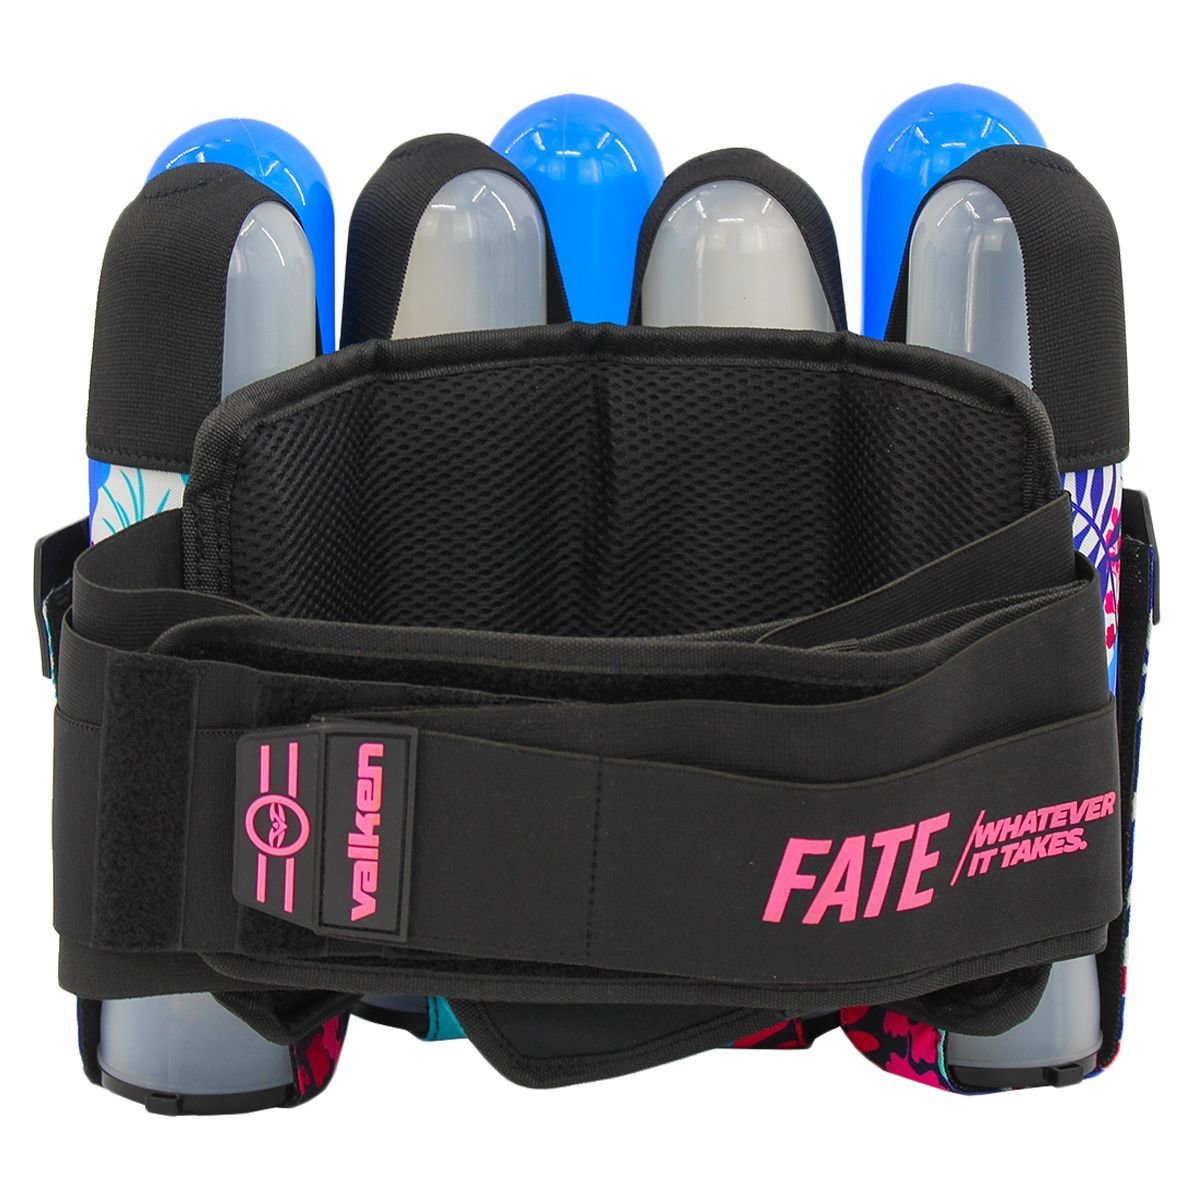 Valken Fate Gfx 4+3 Paintball Harness - Pink Ferns | Paintball Pod Harness